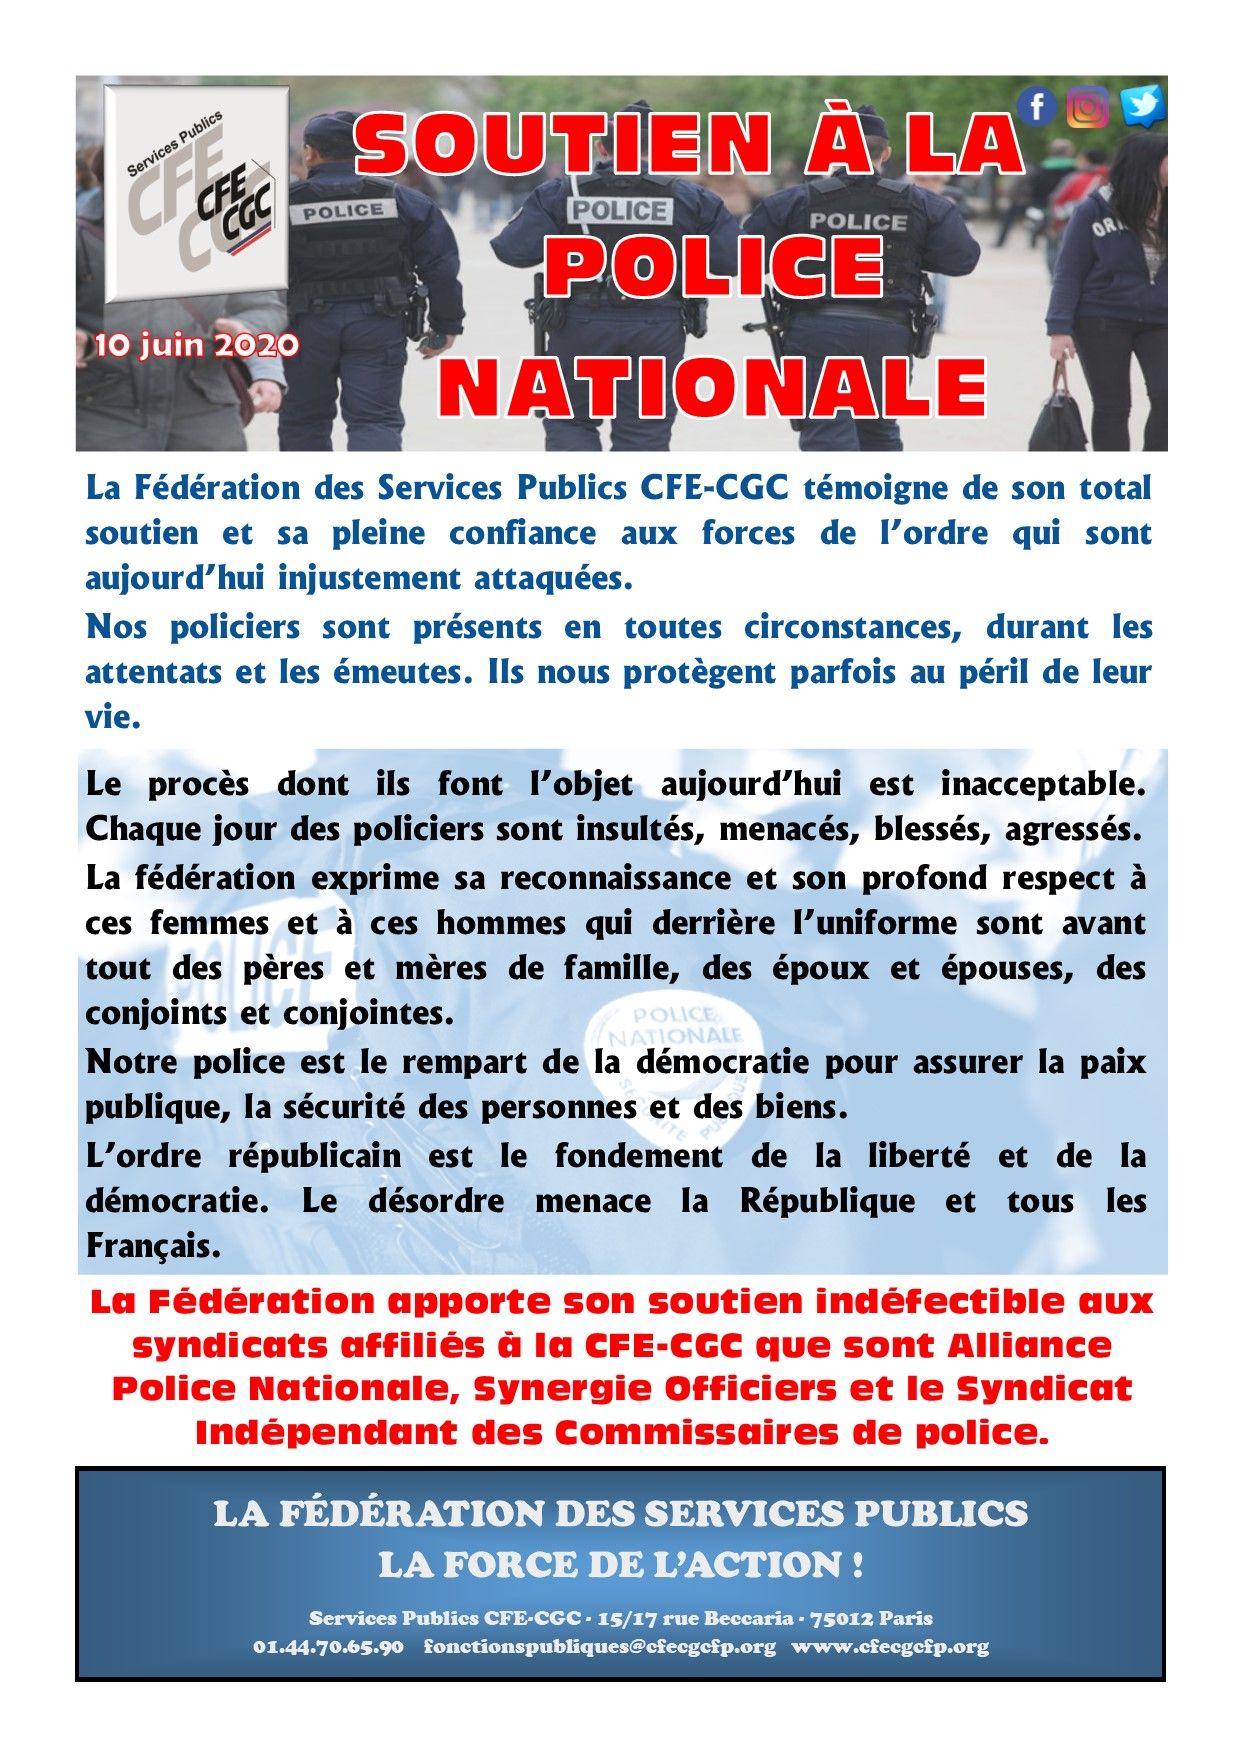 La Fédération des Services Publics CFE-CGC témoigne son soutien à la Police Nationale